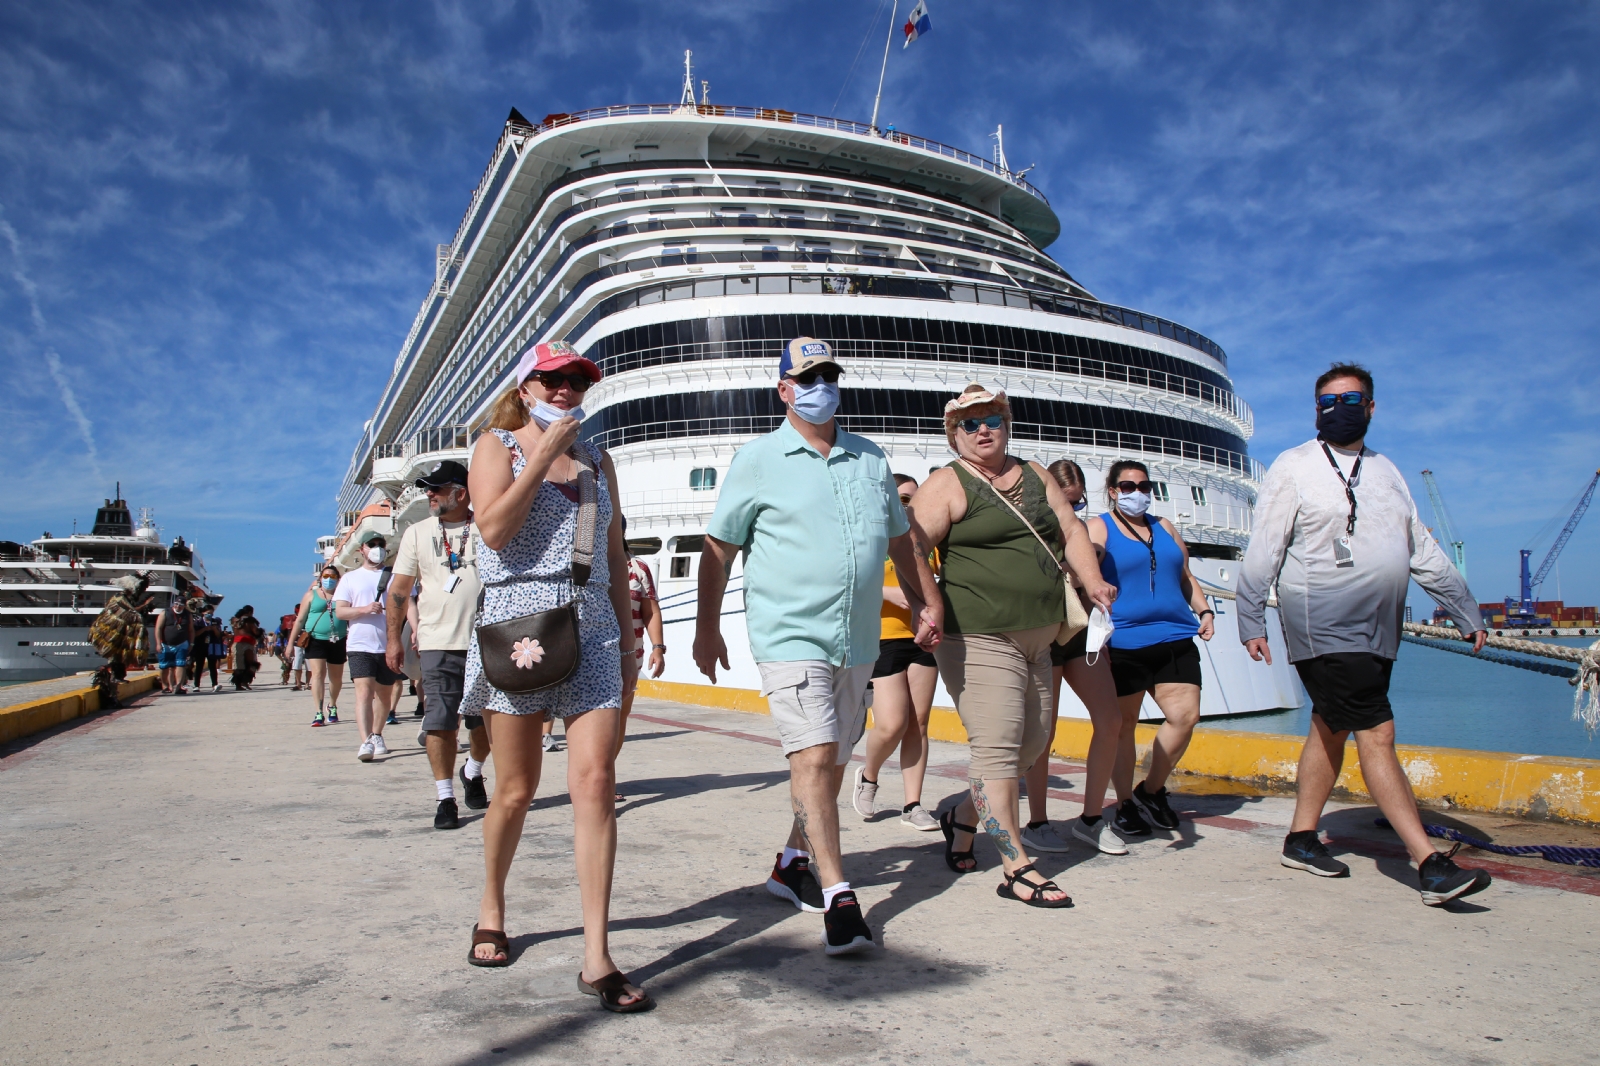 El Carnival Cruise Line es una de las navieras con más movimientos regulares, mientras que el World Voyager visita por primera vez a la entidad